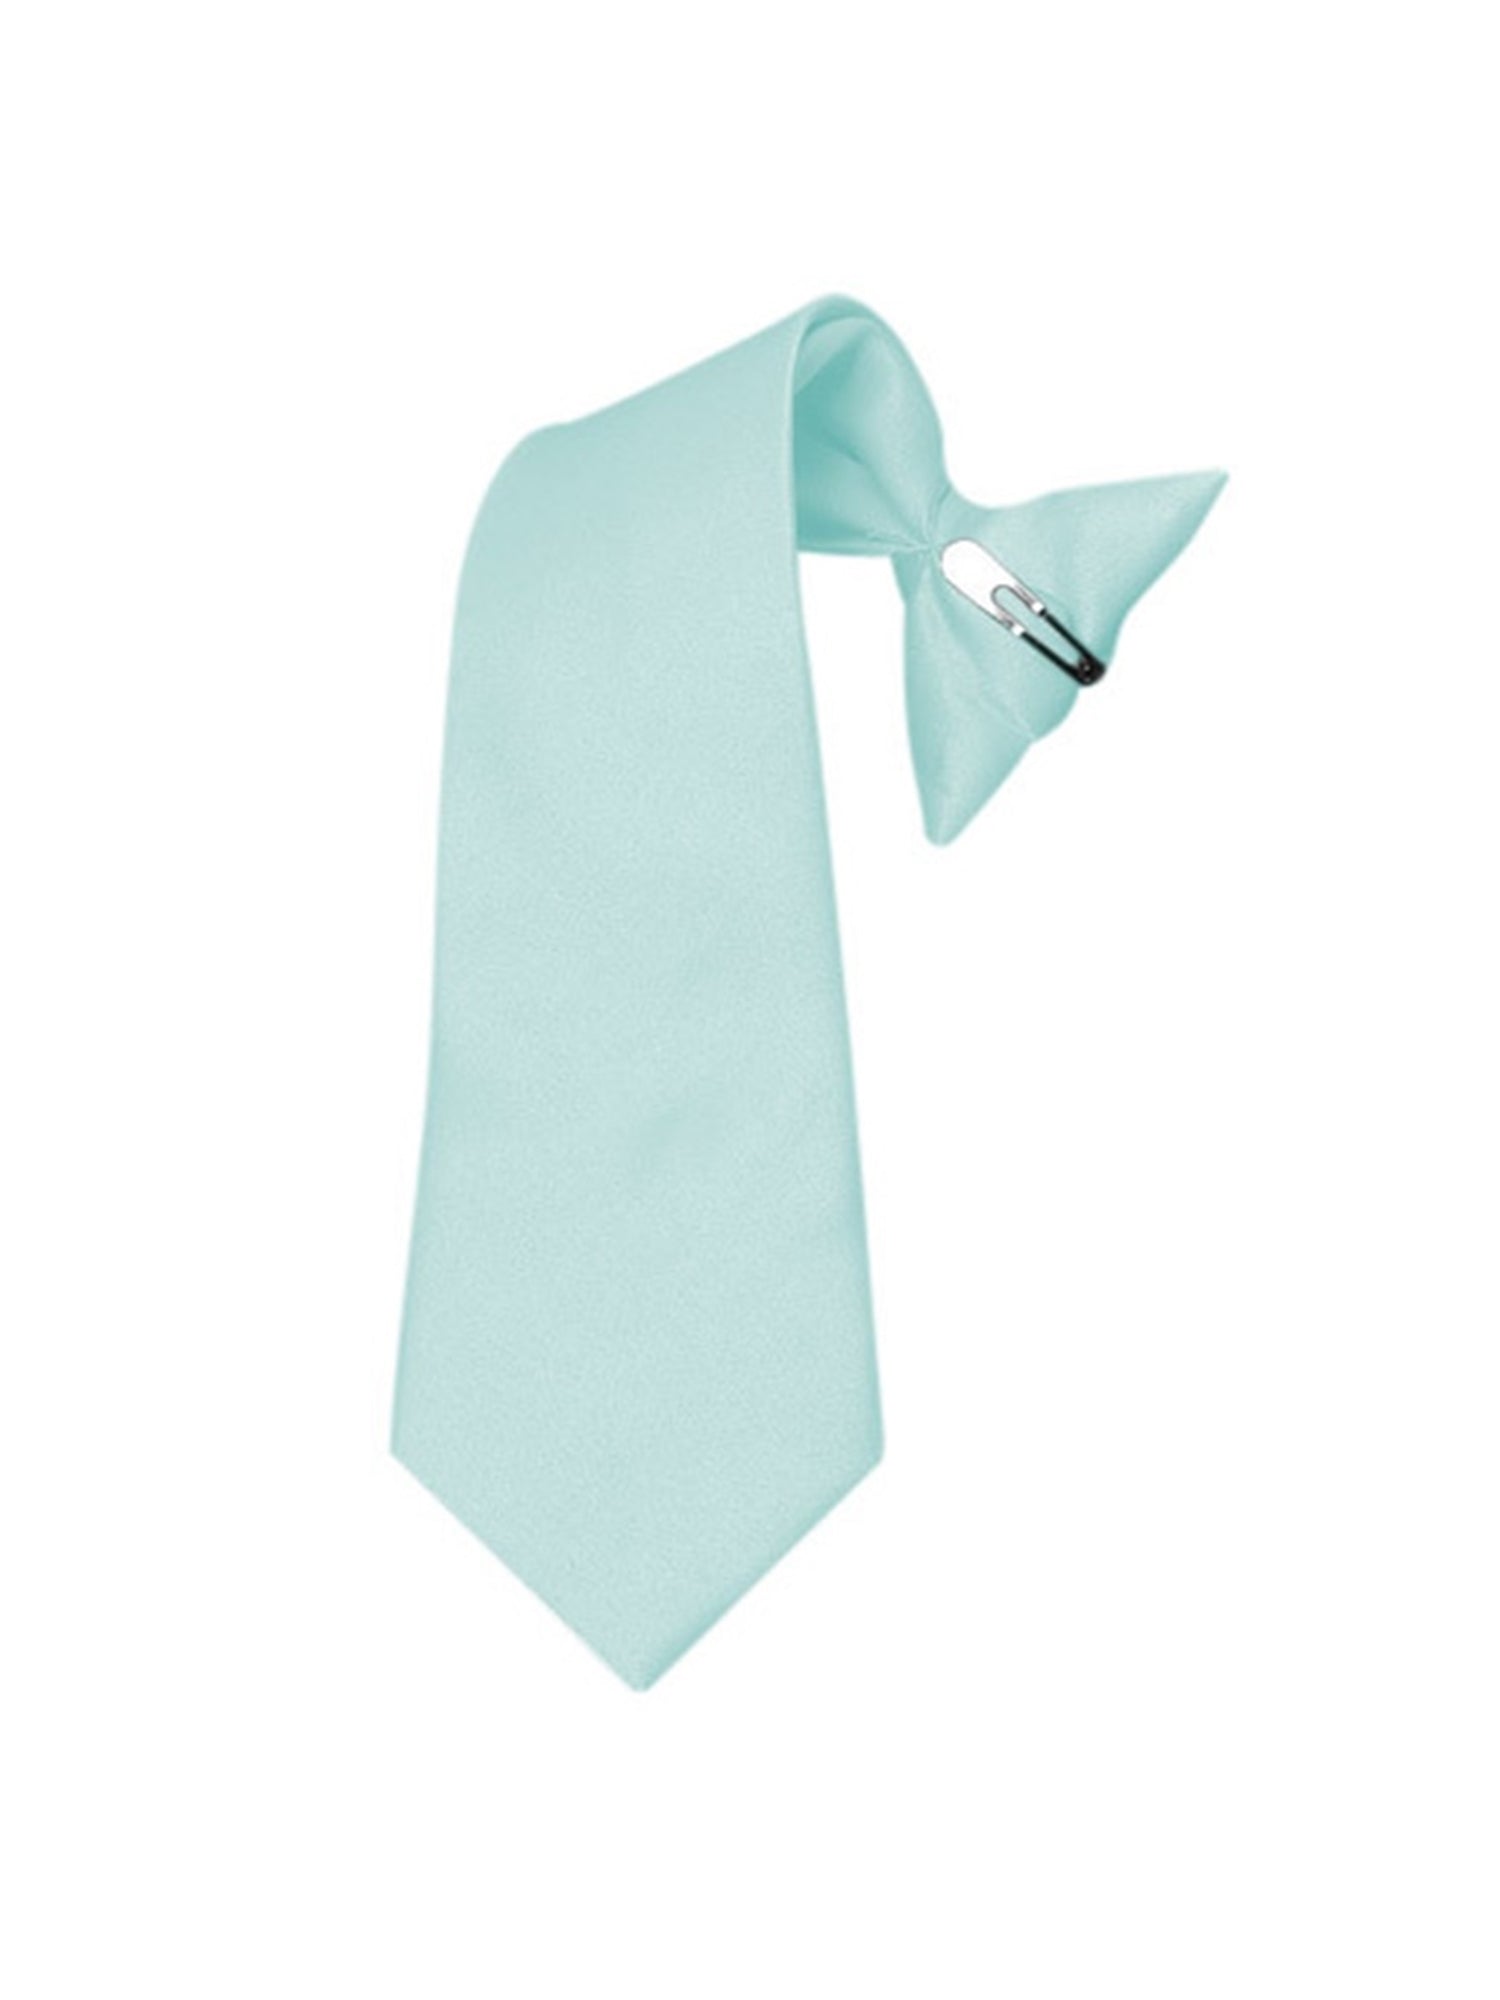 Boy's Solid Color Pre-tied Clip On Neck Tie Neck Tie TheDapperTie Baby Blue 8" x 2.5" 